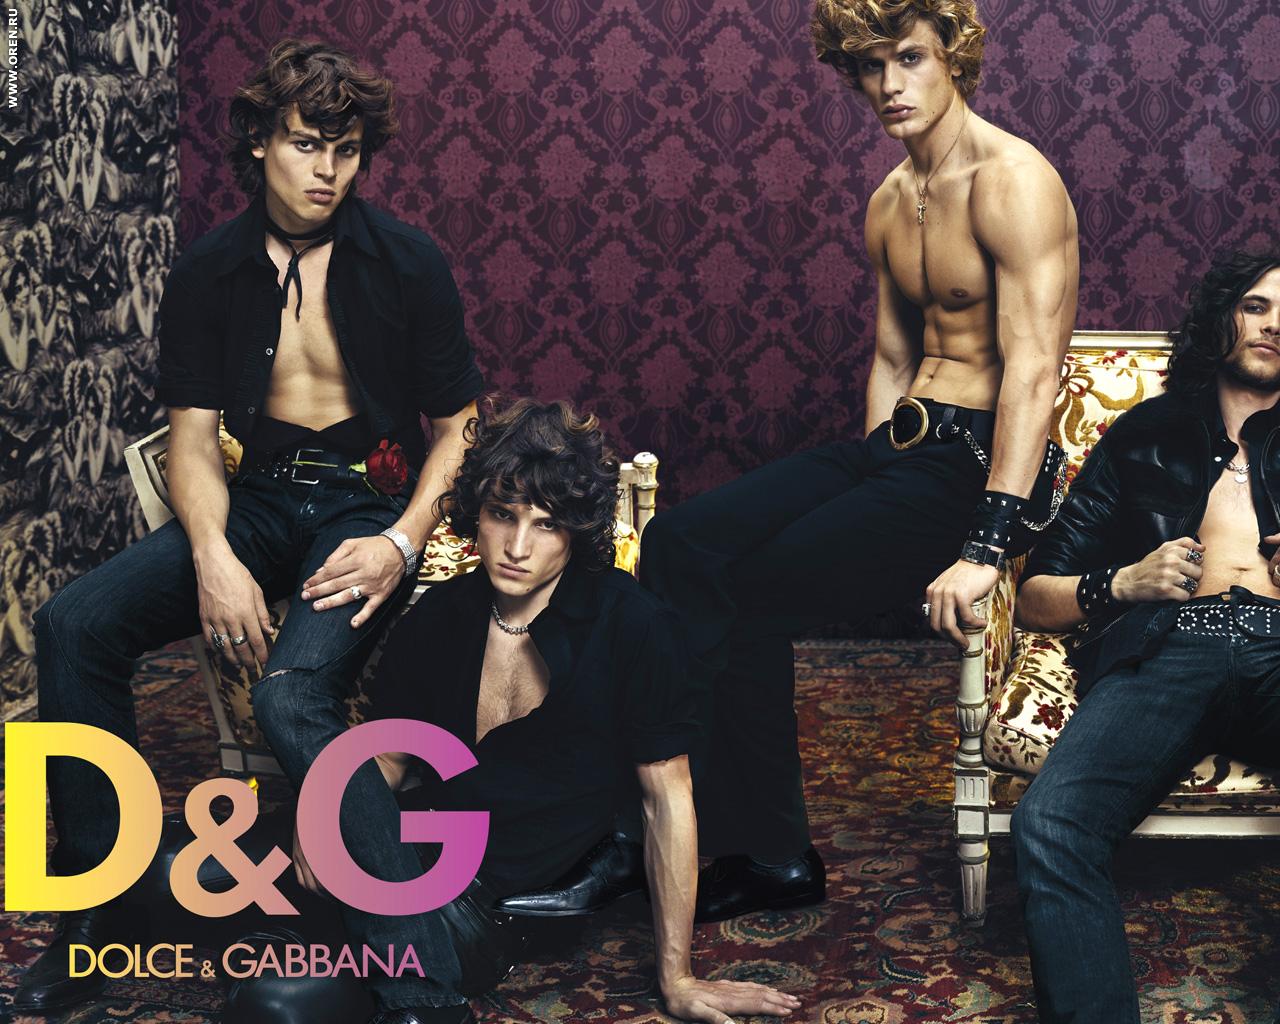 http://2.bp.blogspot.com/-BcEqkTTAQAE/TmCkLzXaB2I/AAAAAAAABmo/xfjH6bCrWcE/s1600/Dolce+and+Gabbana+Men+%25284%2529.jpg